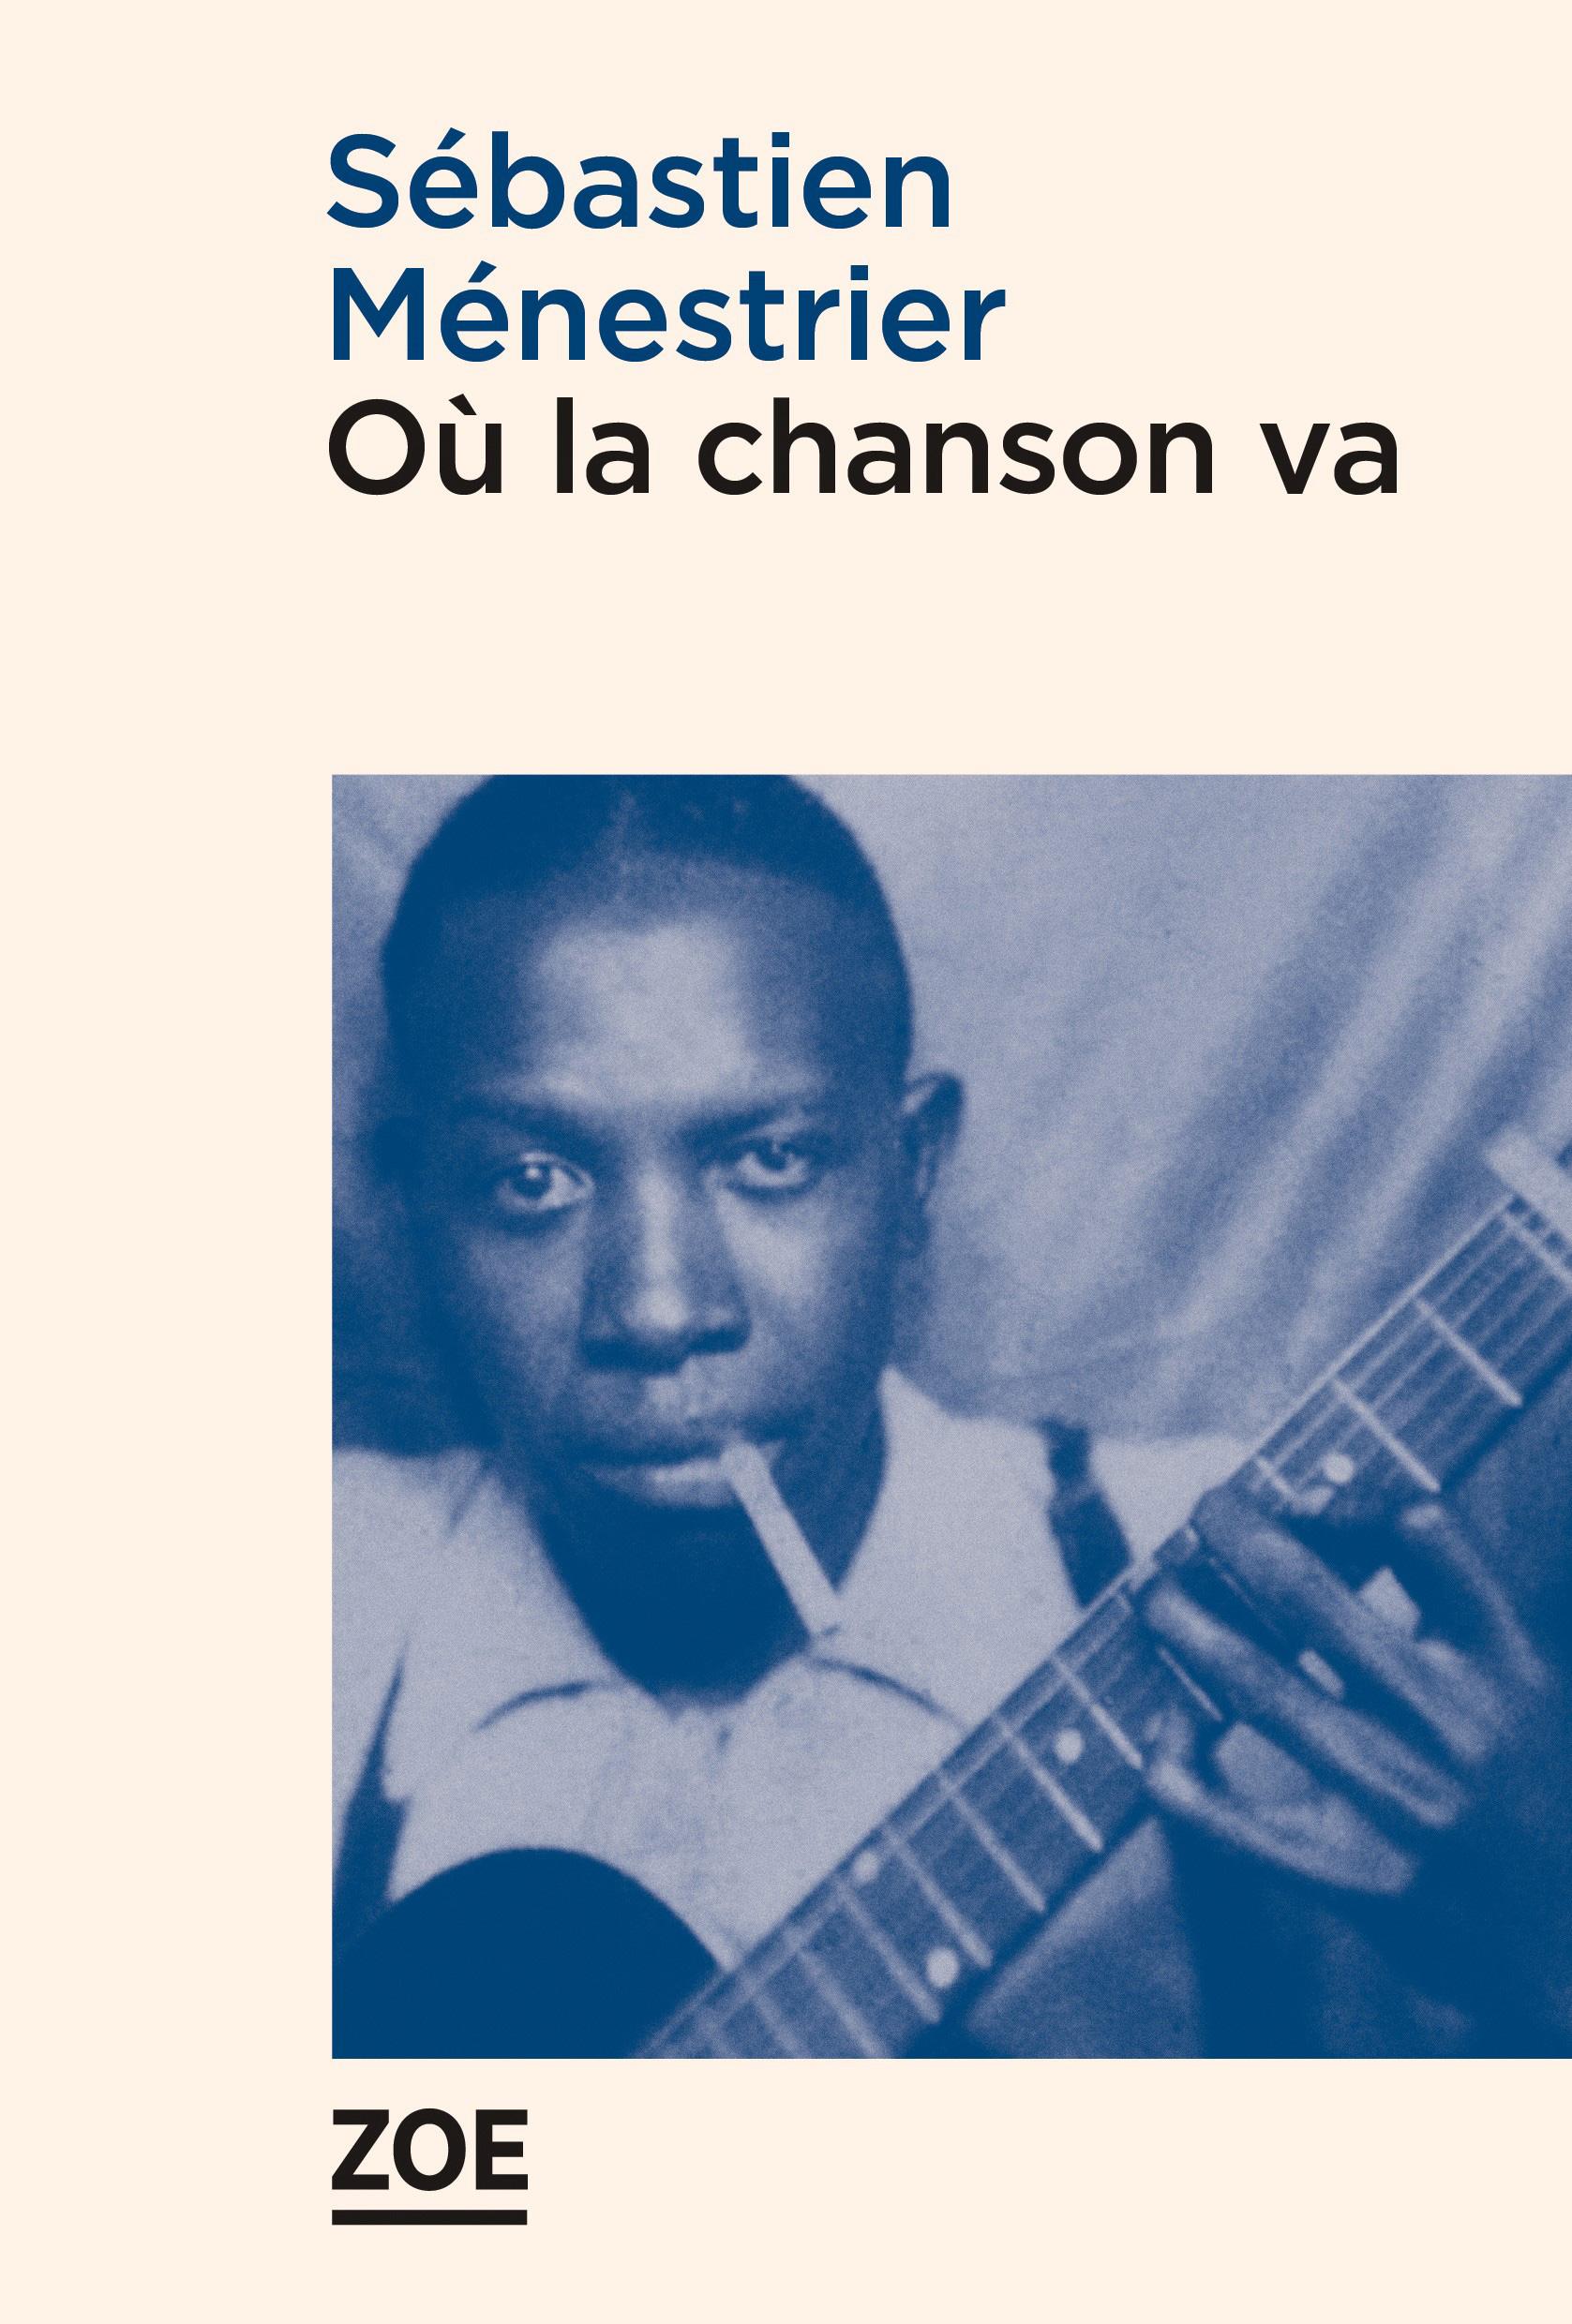 La couverture du livre "Où la chanson va" de Sébastien Ménestrier. [Editions Zoé]